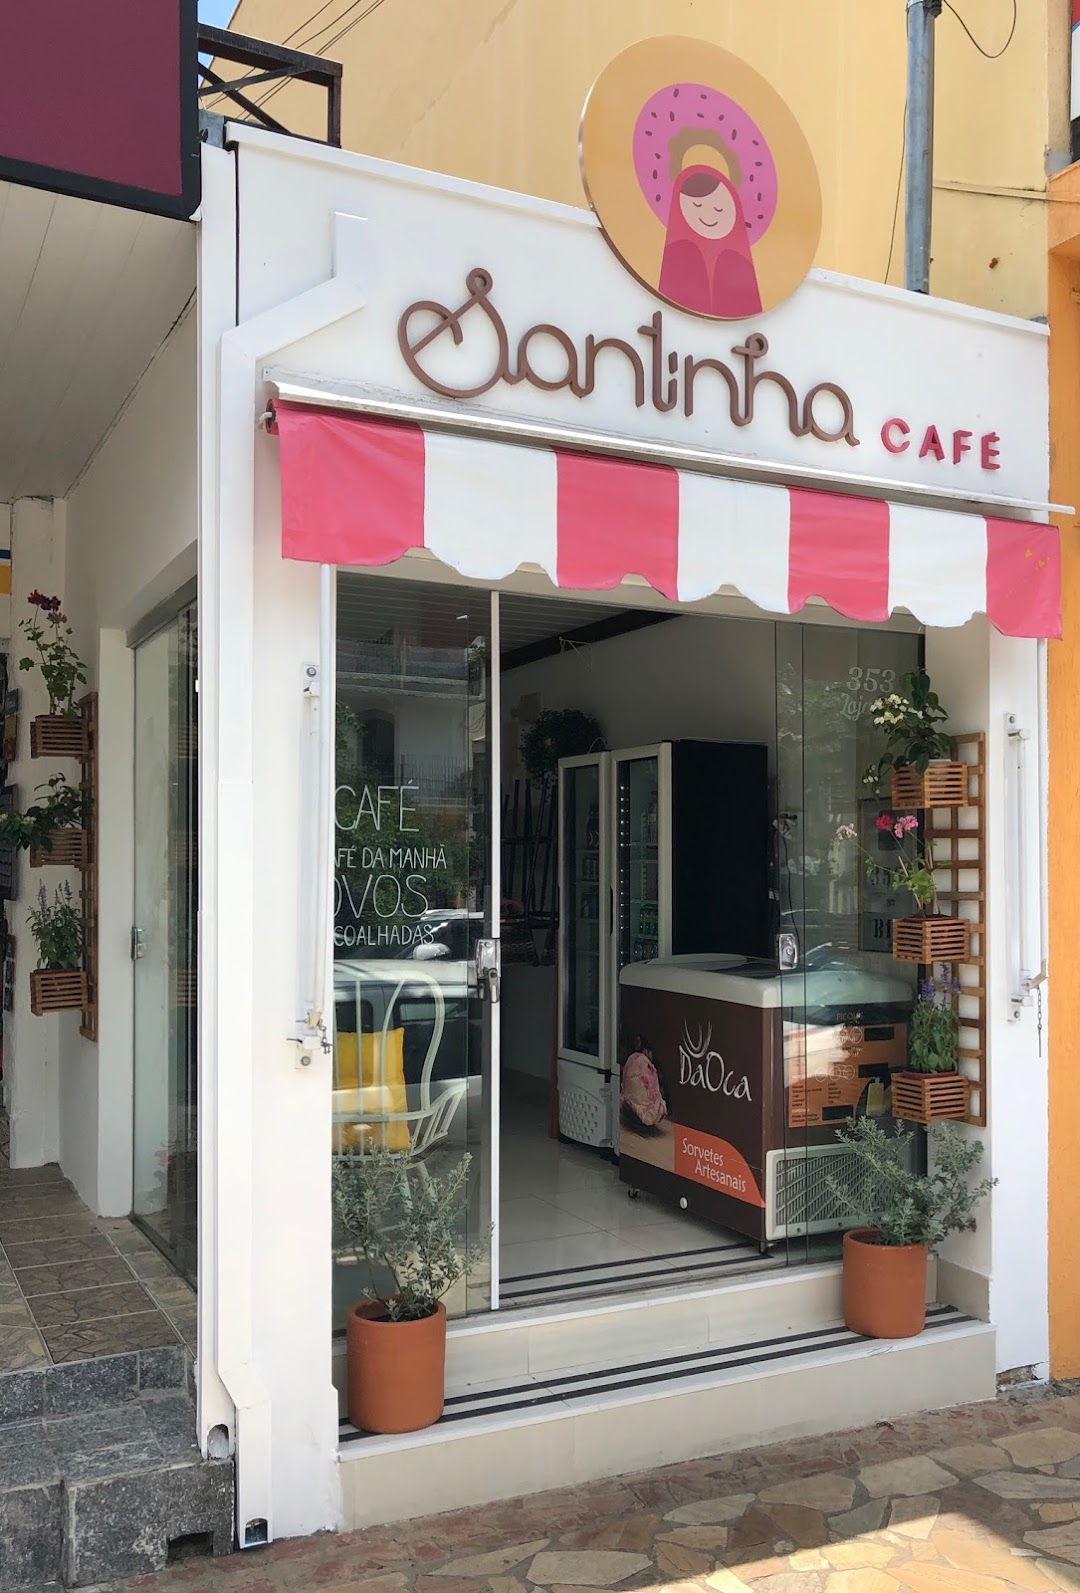 Santinha Café